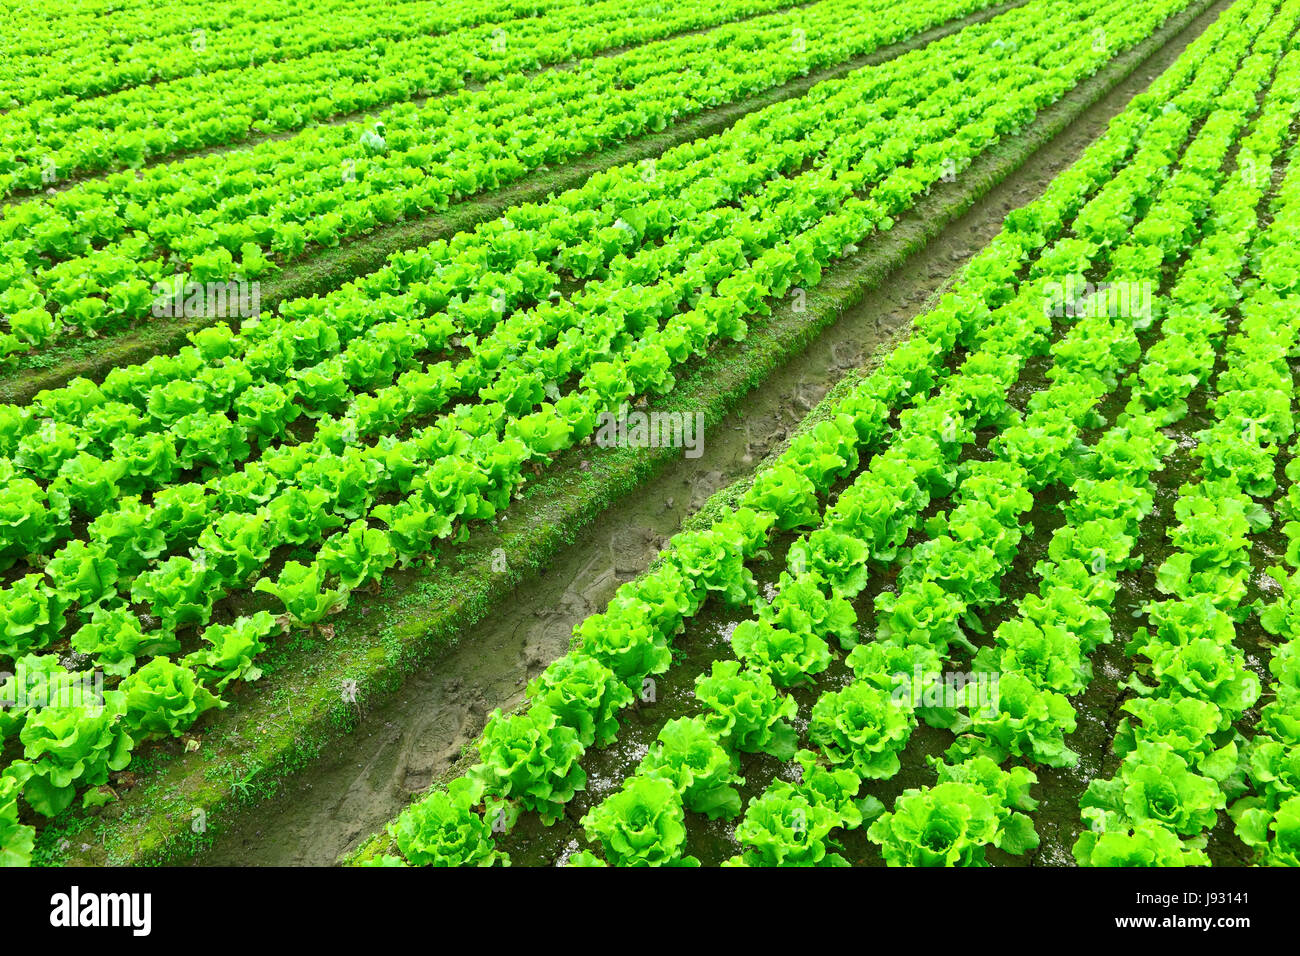 La nourriture, aliment, de feuilles, de l'agriculture, l'industrie, sol, sol, terre, humus, nouveau, Banque D'Images